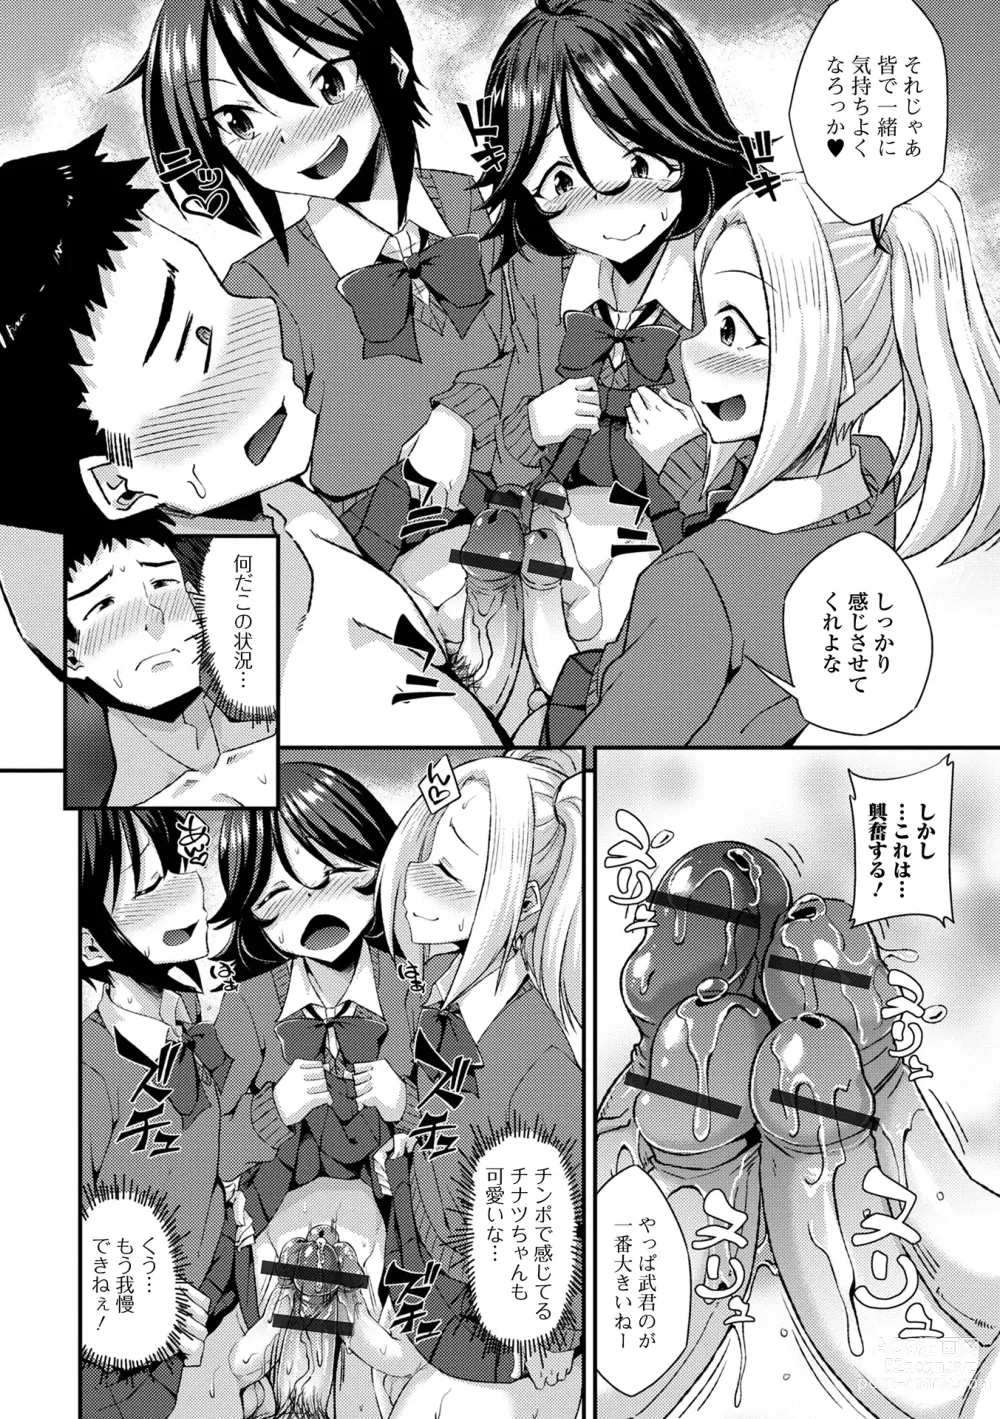 Page 12 of manga Gekkan Web Otoko no Ko-llection! S Vol. 94